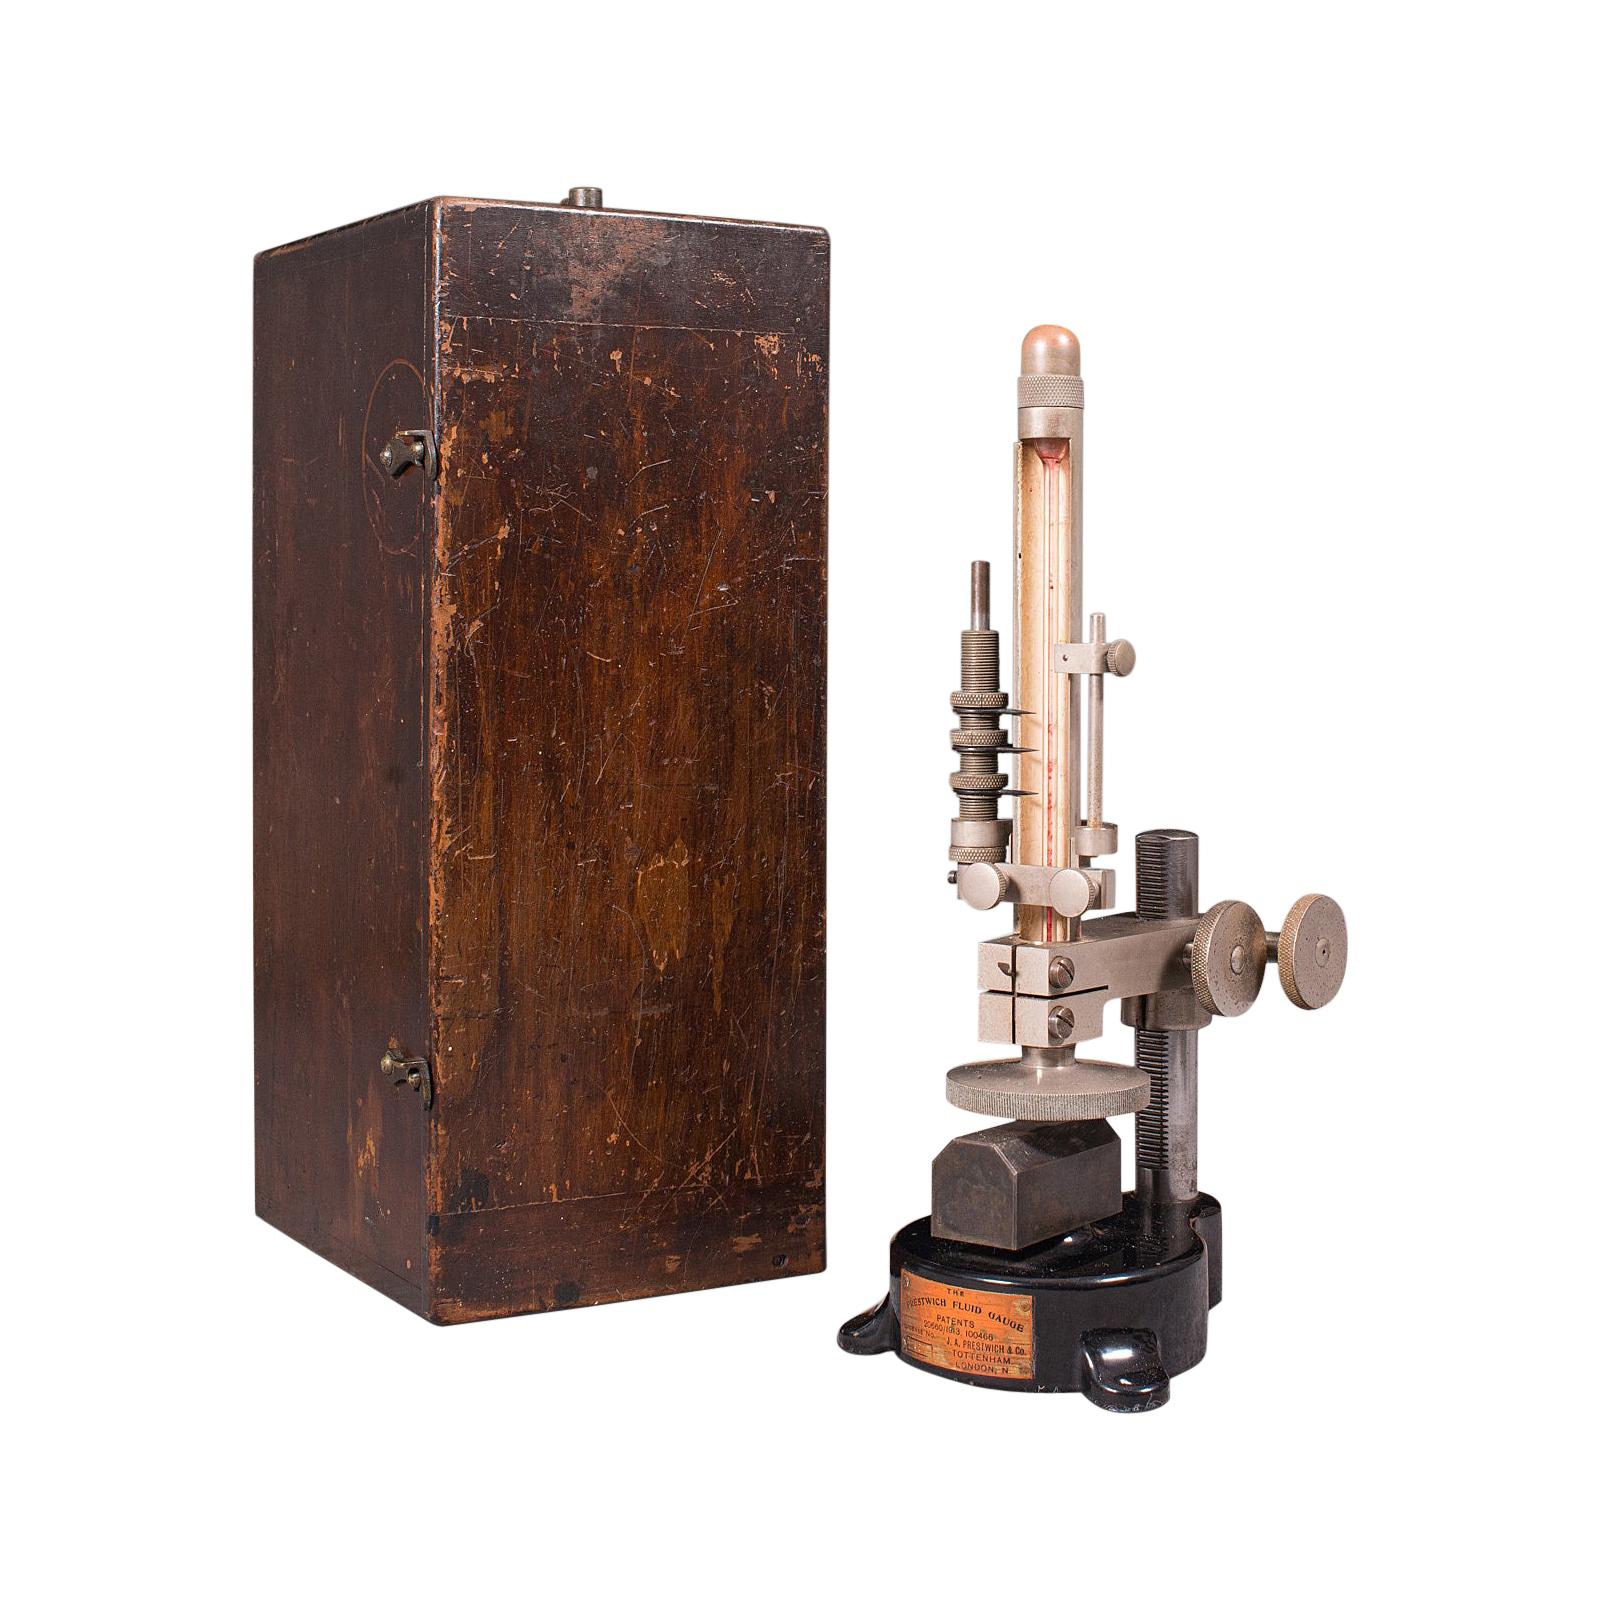 Antike Prestwich Fluid Gauge, Englisch, Aeronautisches, wissenschaftliches Instrument